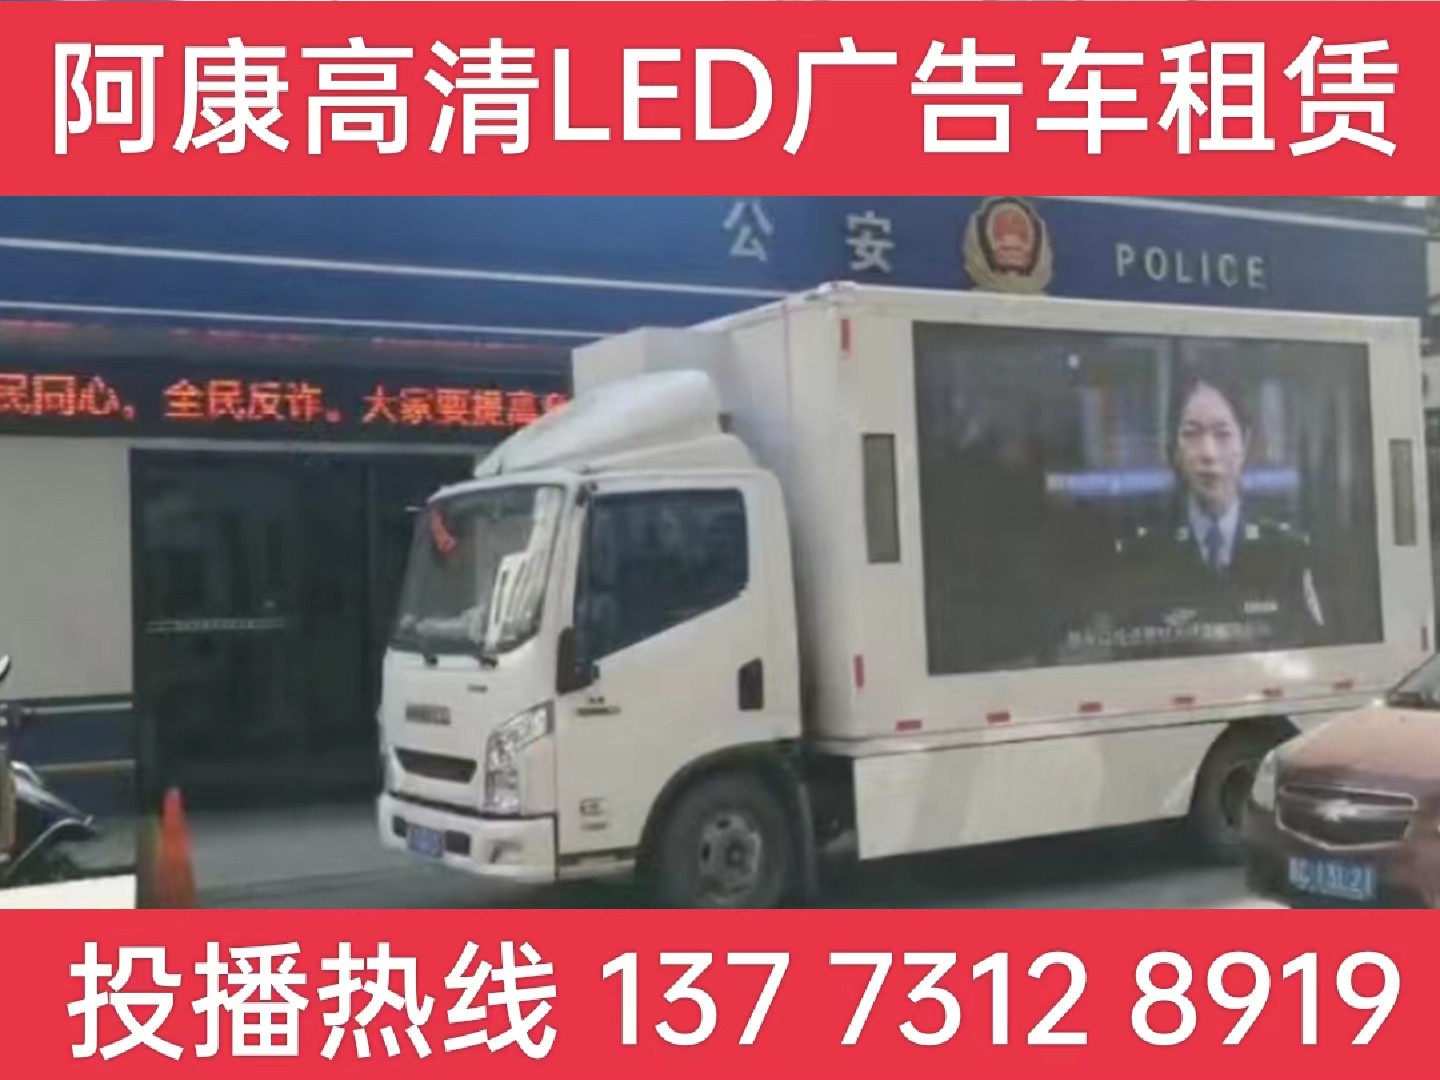 姜堰区LED广告车租赁-反诈宣传